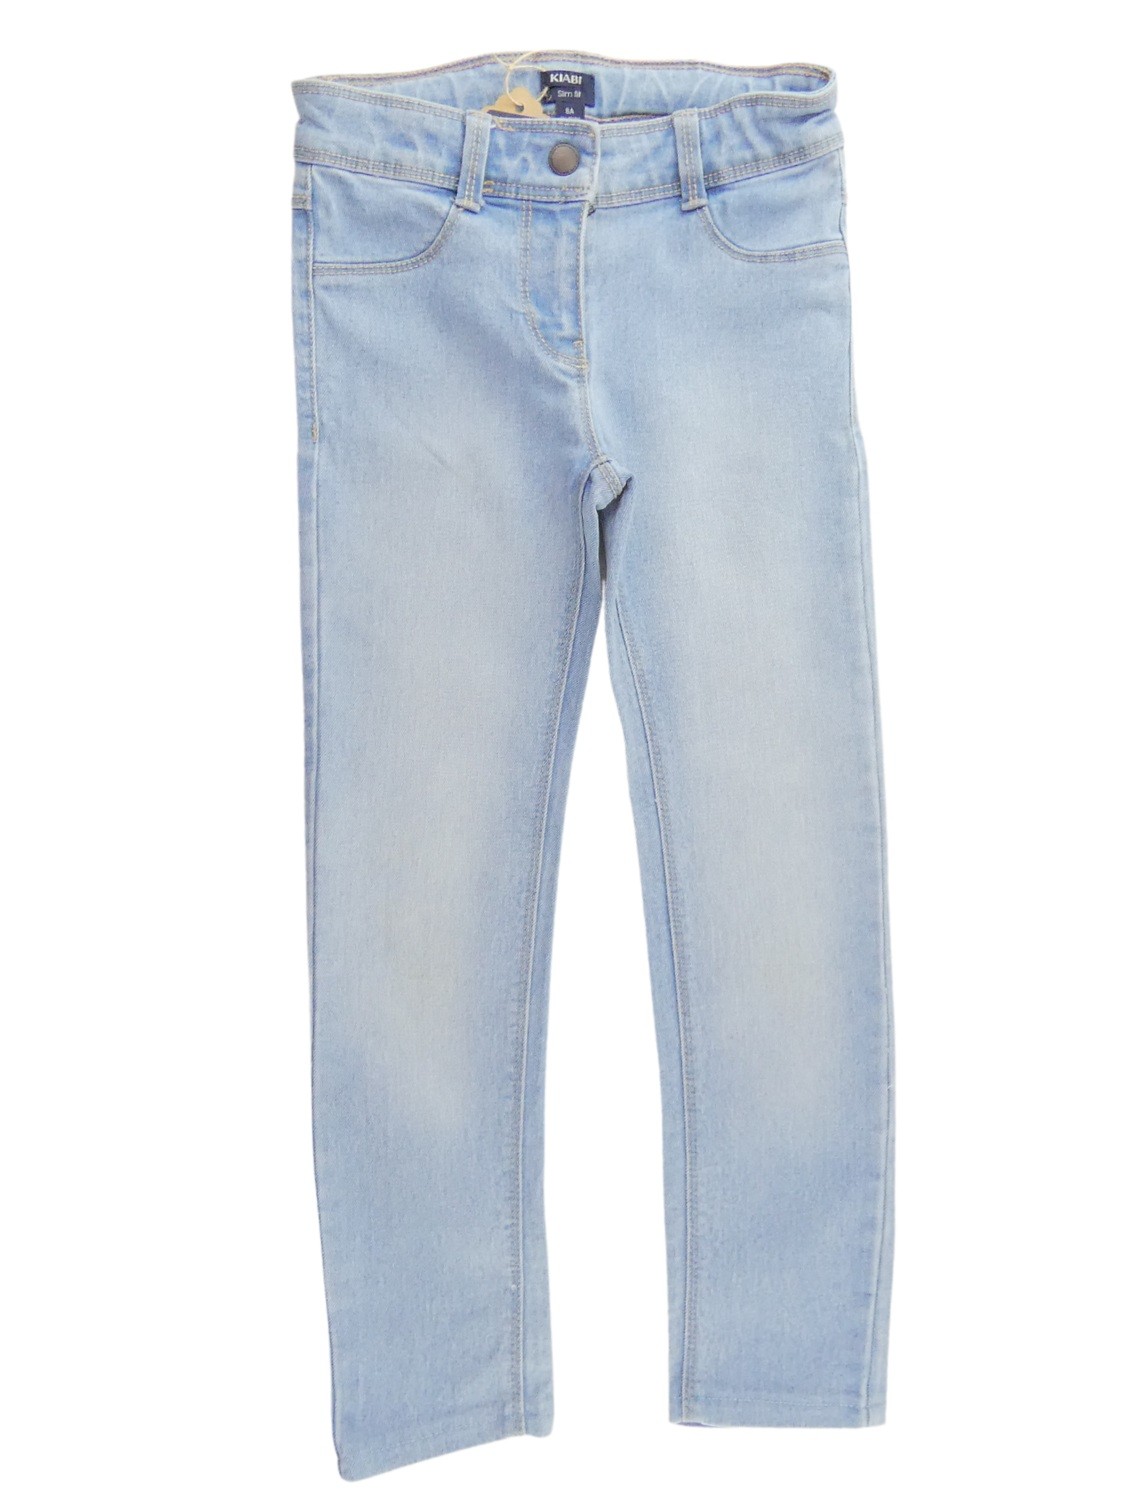 Pantalon jeans slim bleu clair KIABI taille 8ans